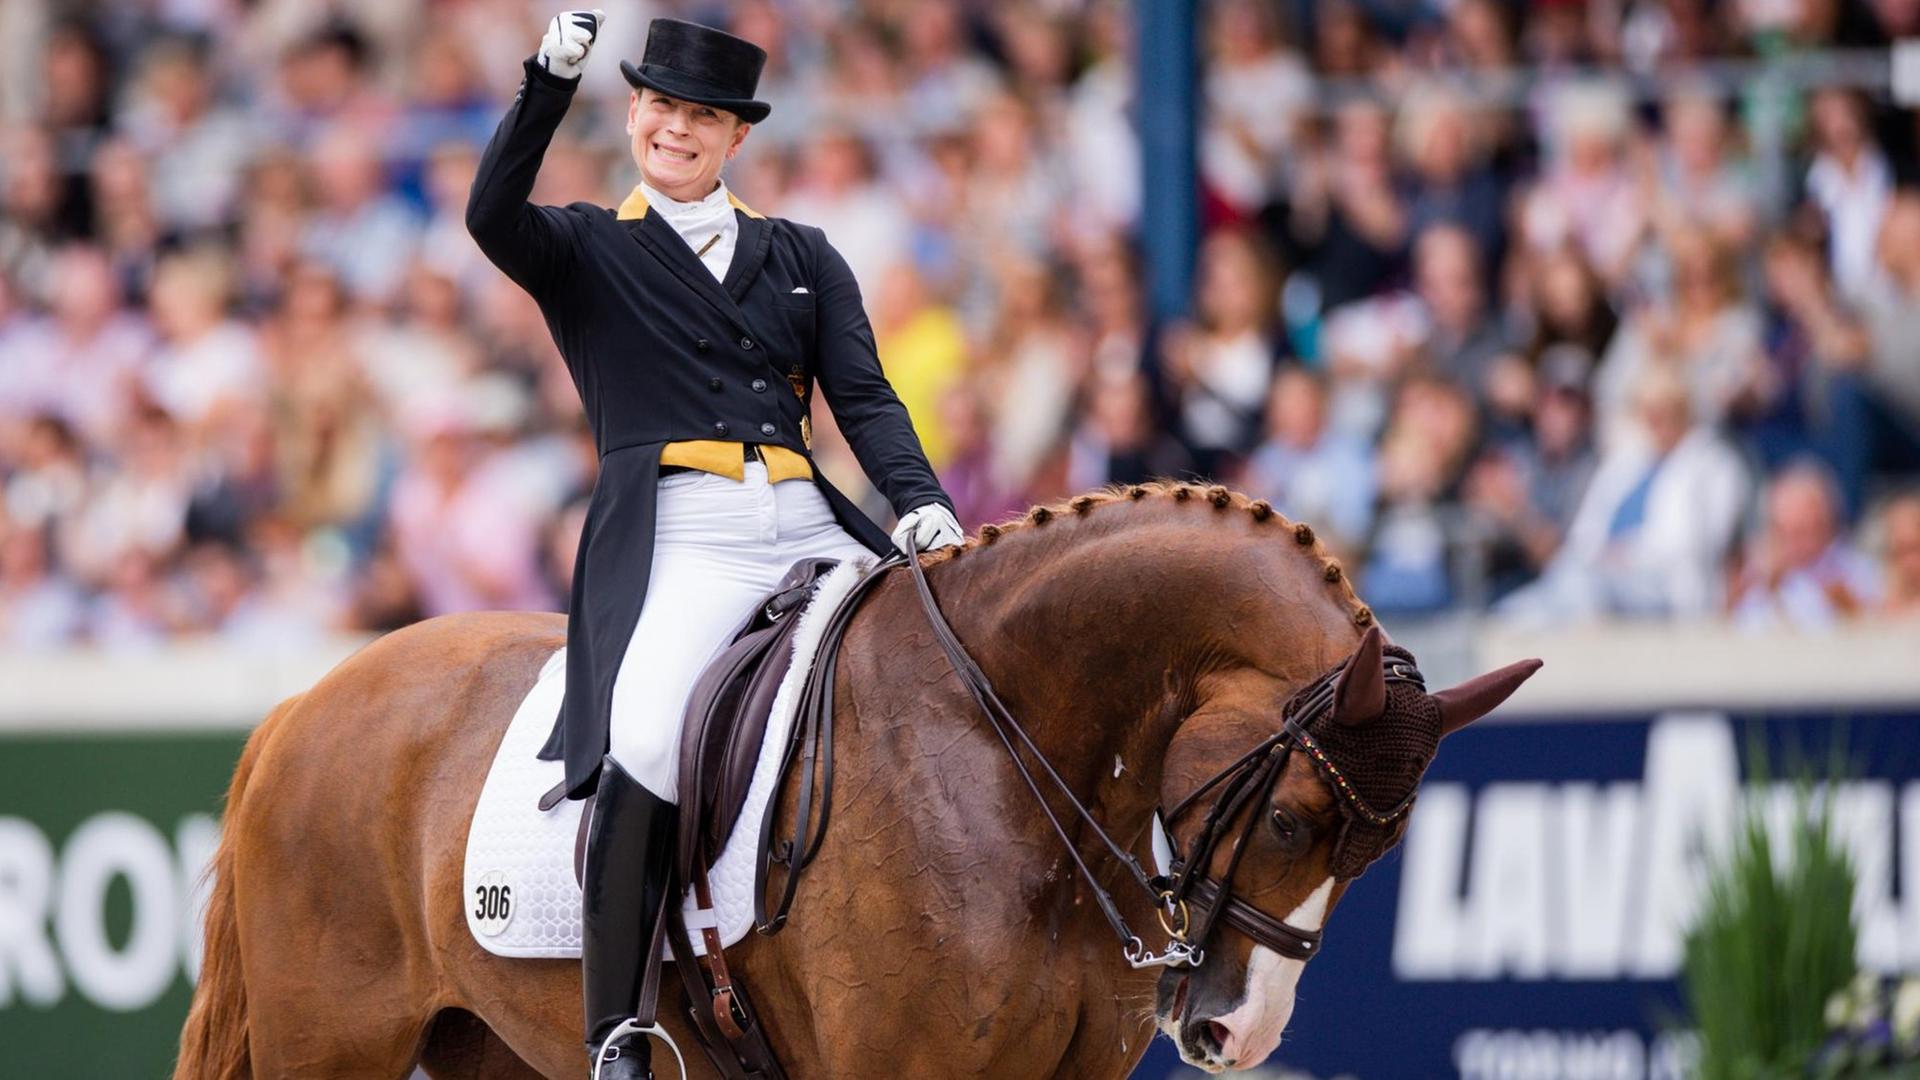 Die Reiterin Isabell Werth hat 2019 mit ihren Pferd den Dressur-Preis in Aachen gewonnen.